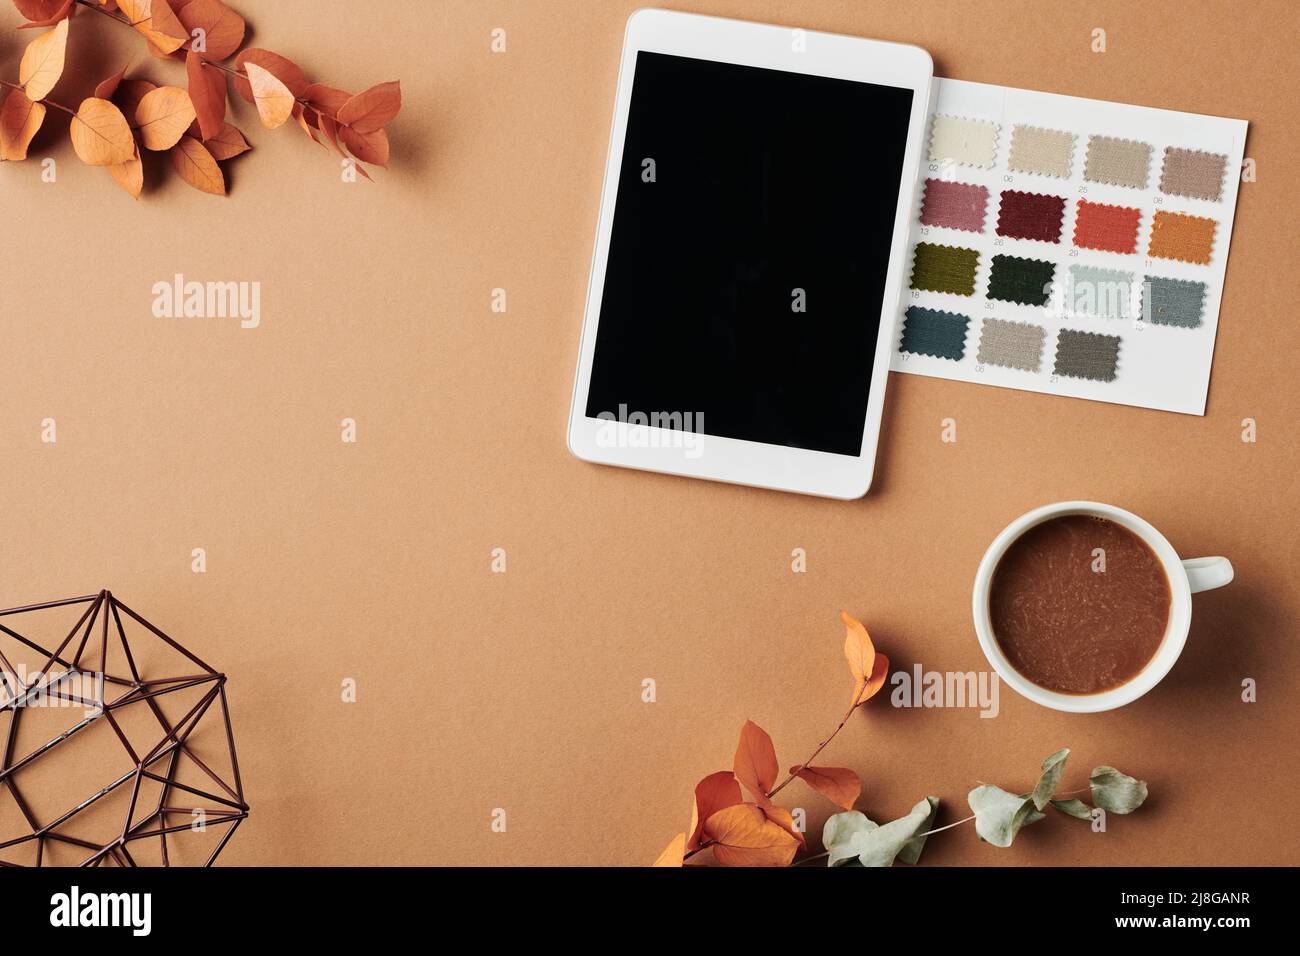 Vue de dessus de l'espace de travail du designer avec tablette, nuances de couleurs, tasse de café, vase fait à la main et feuilles d'orange sèches sur une table beige Banque D'Images